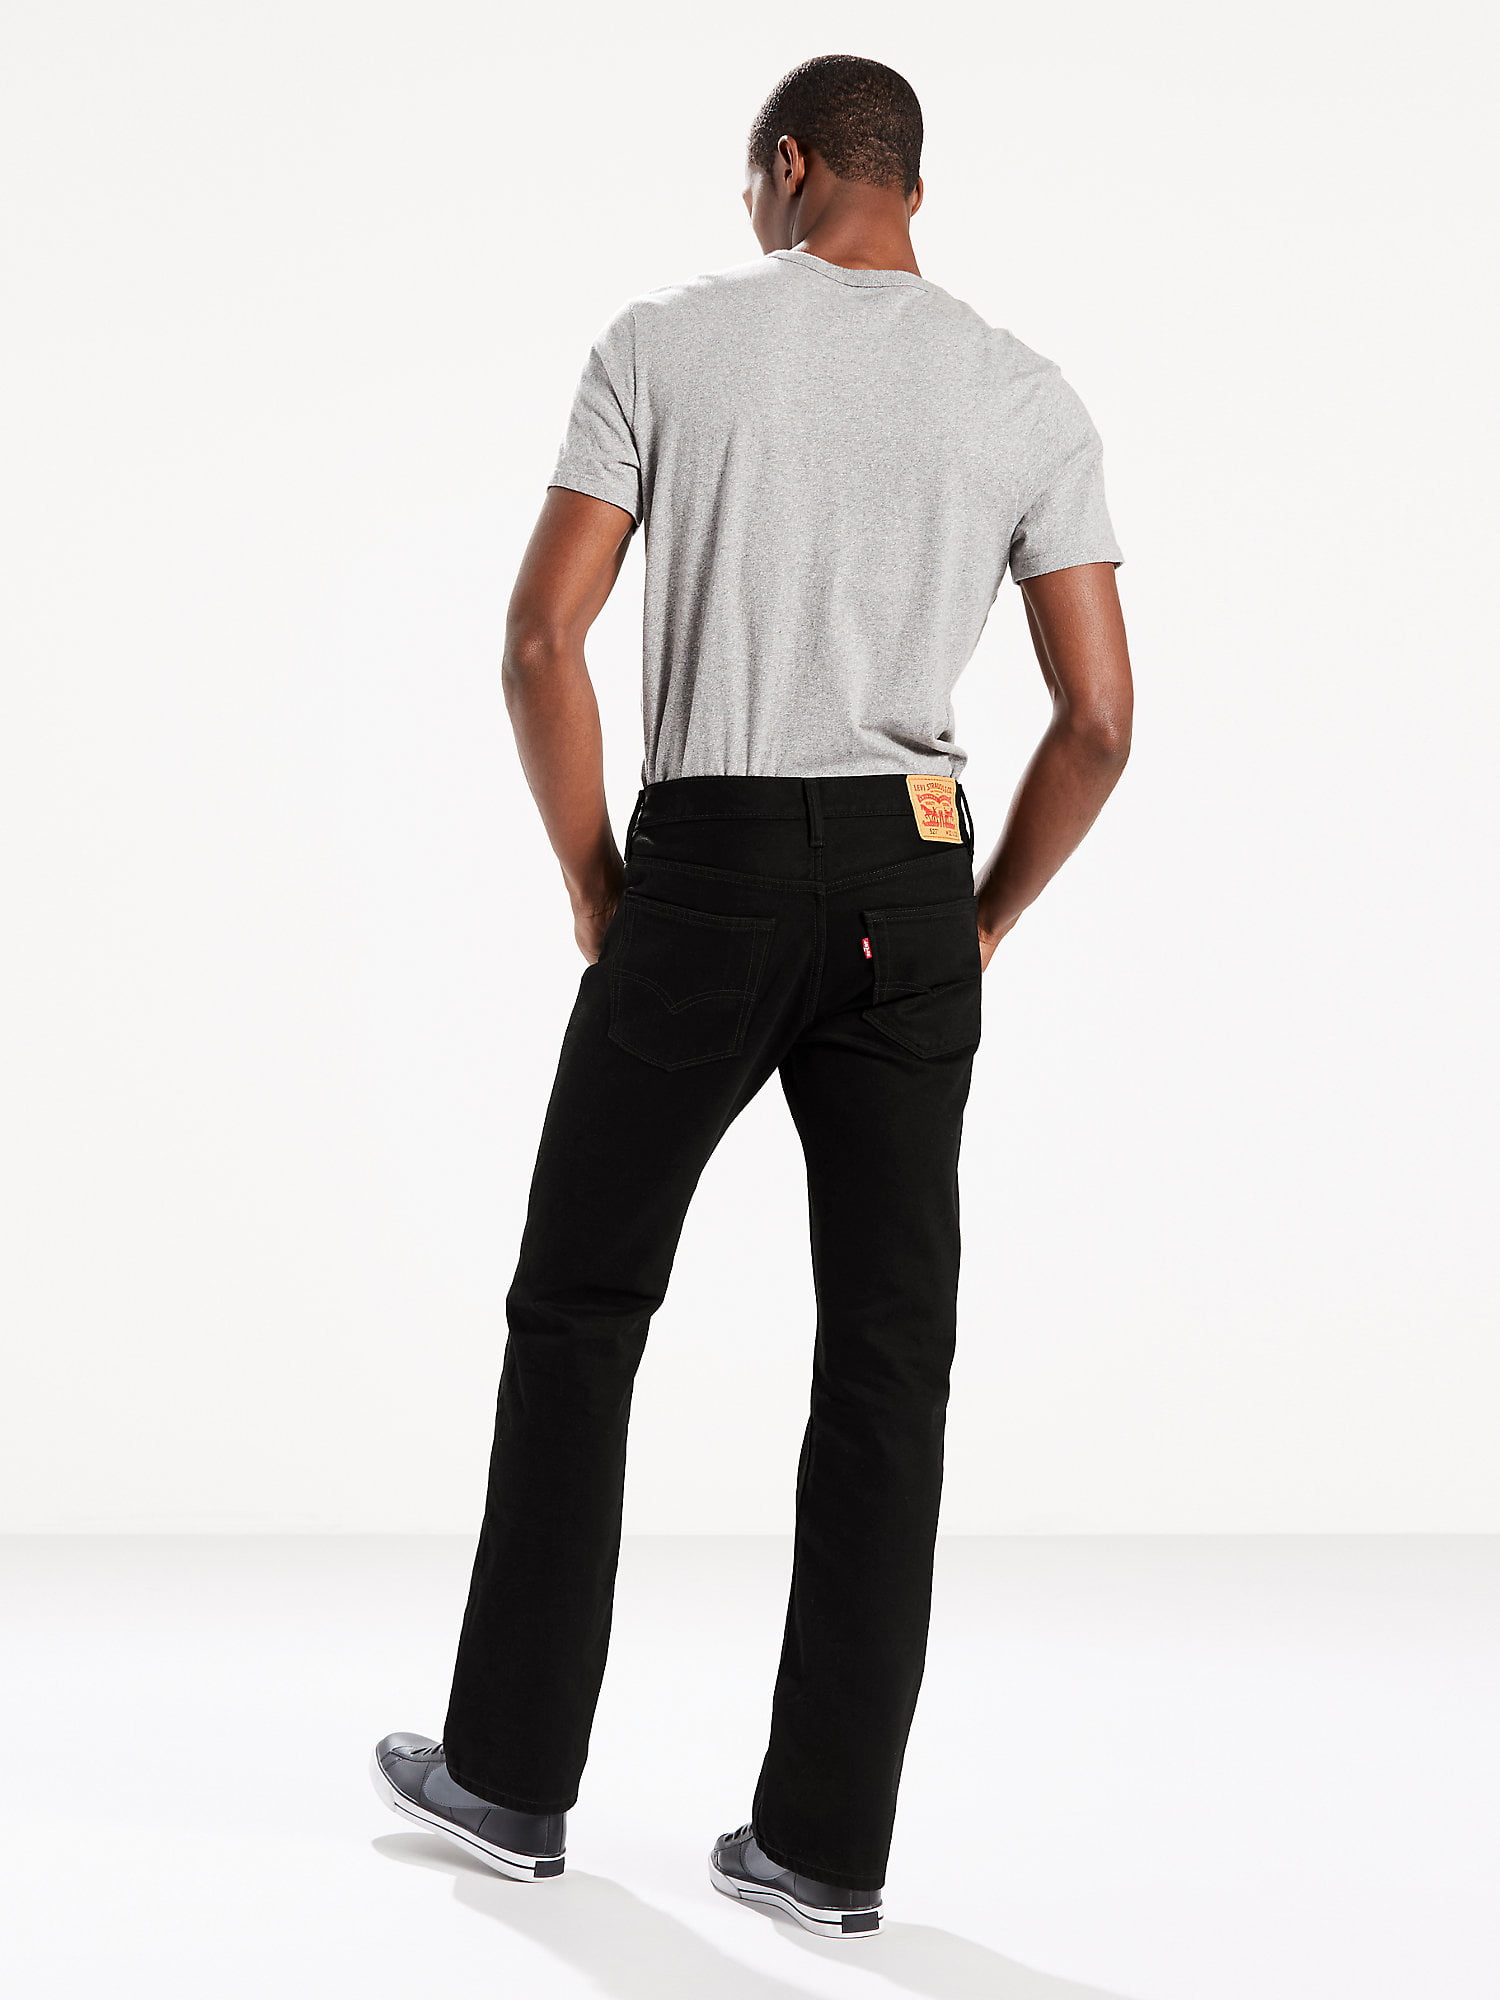 Levi's Men's 527 Slim Boot Cut Fit Jeans 